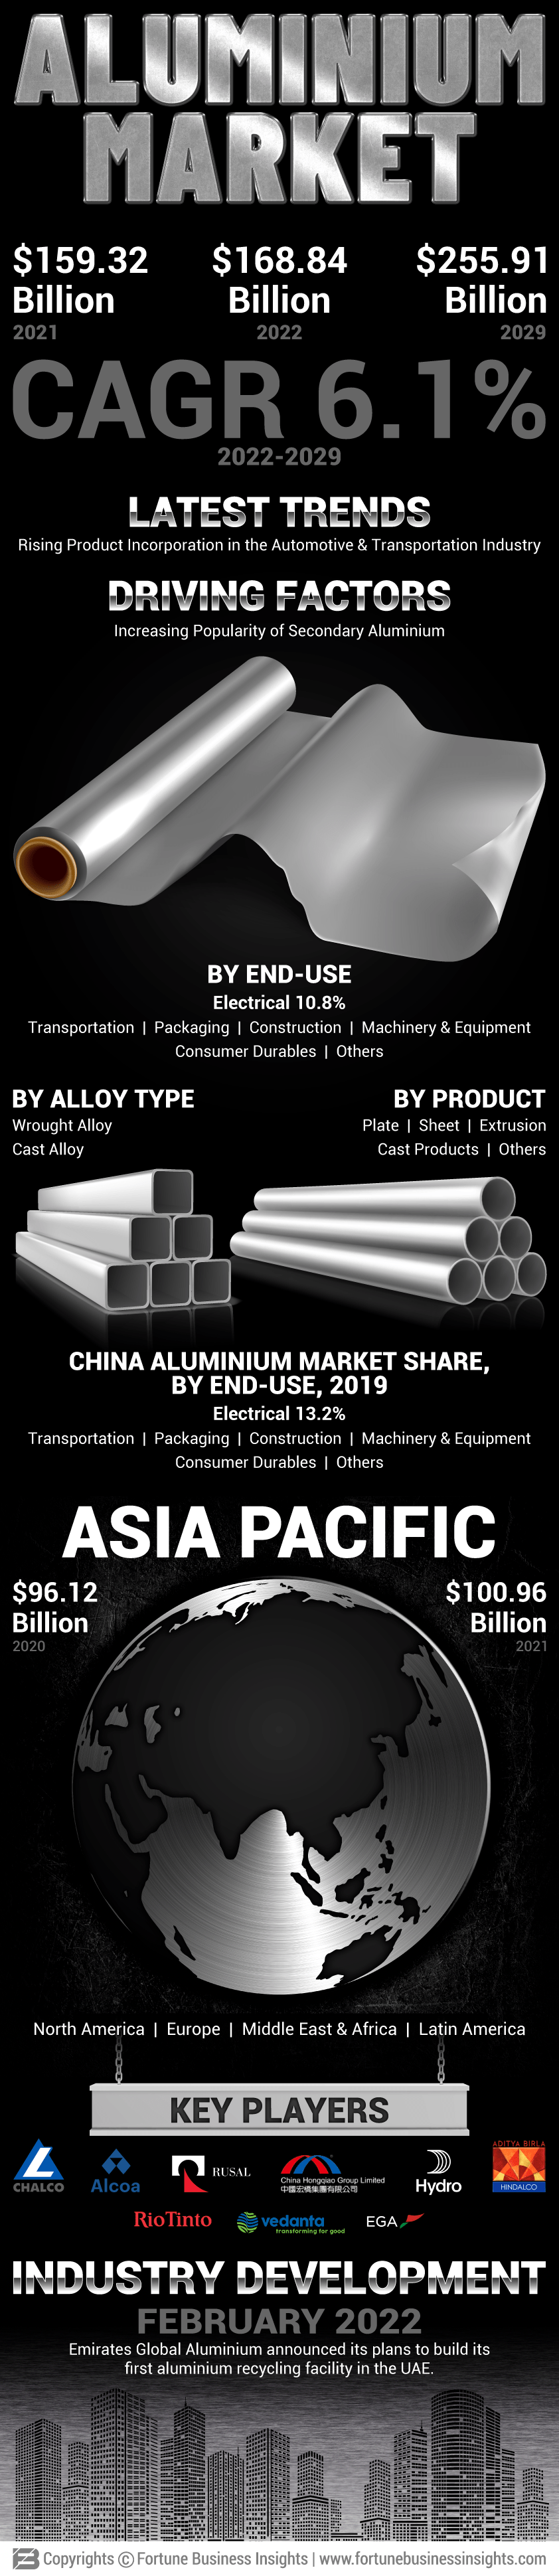 铝市场